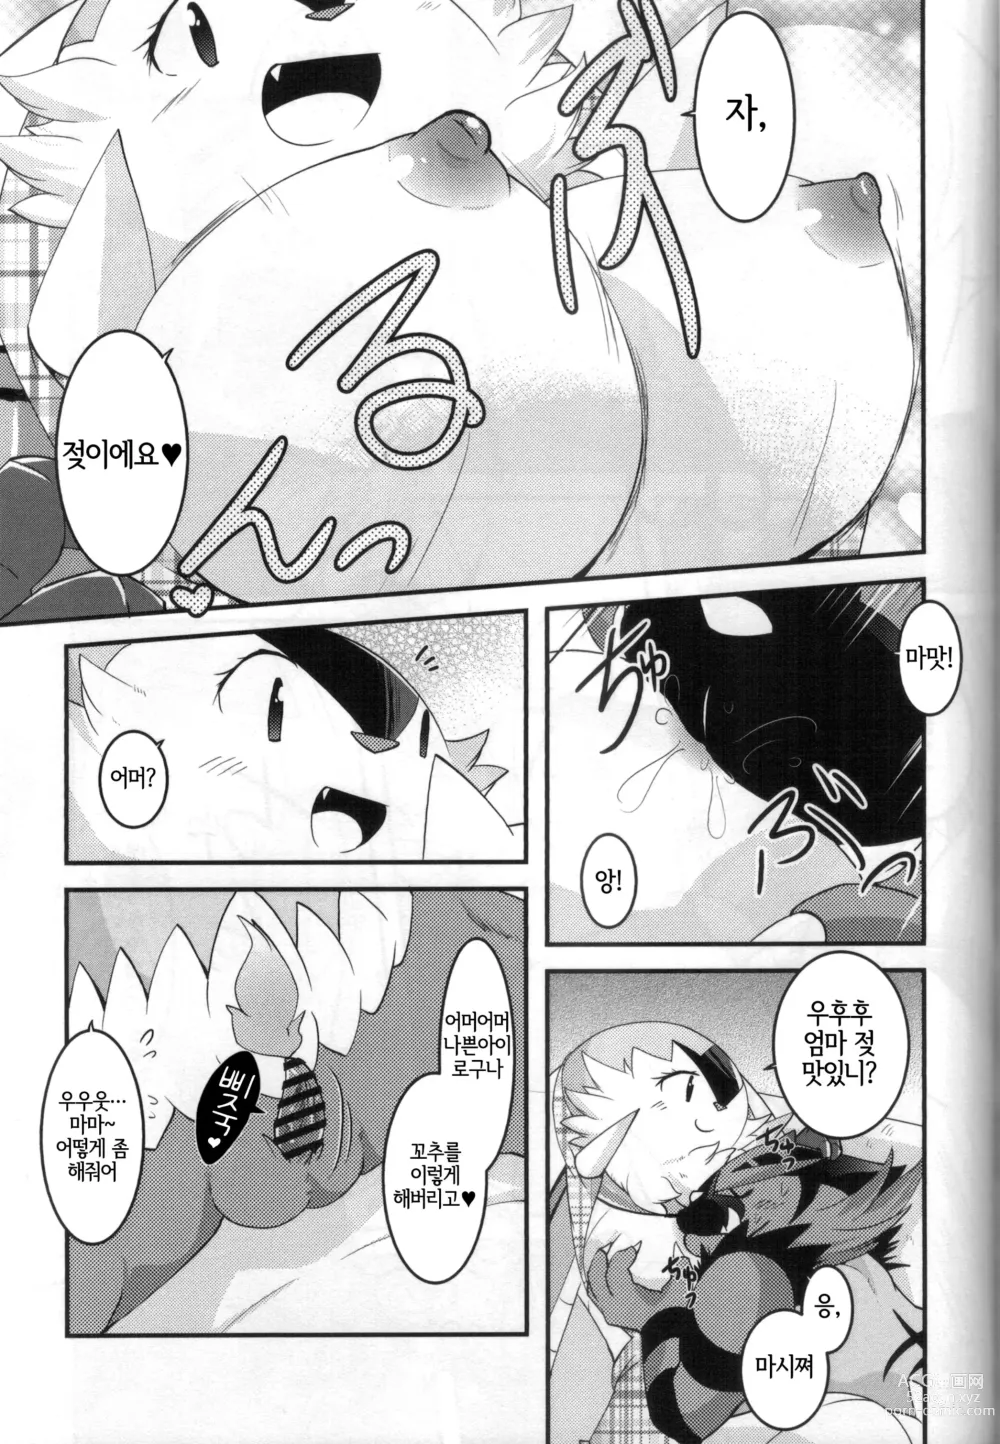 Page 12 of doujinshi 아빠도 엄마한테 어리광 부리고 싶어!